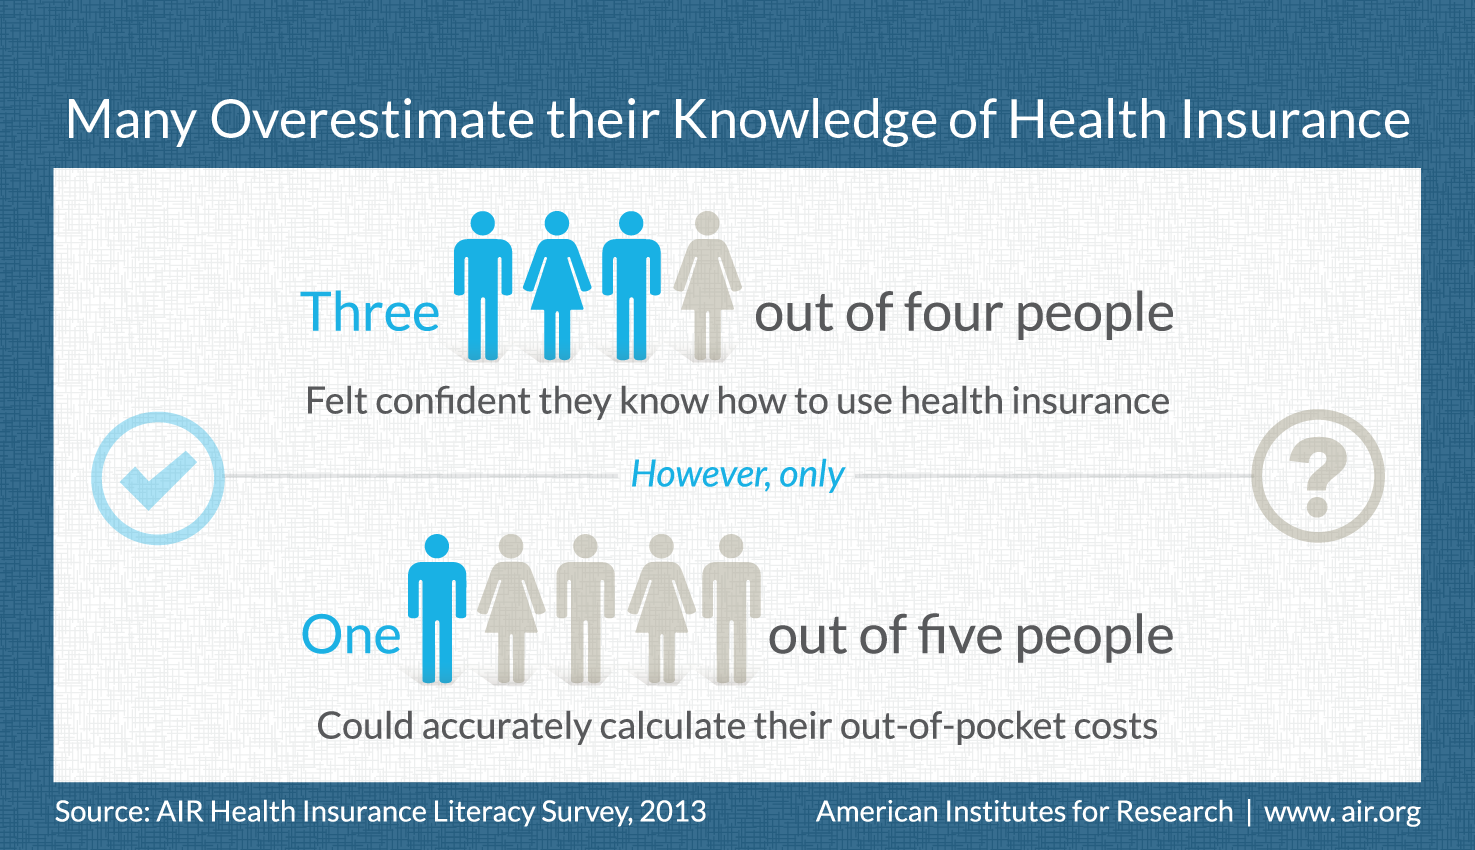 来自空中调查结果的健康保险素养信息图：四分之一的人说他们有使用健康保险的知识，但是只有5人可以计算出他们的自付费用